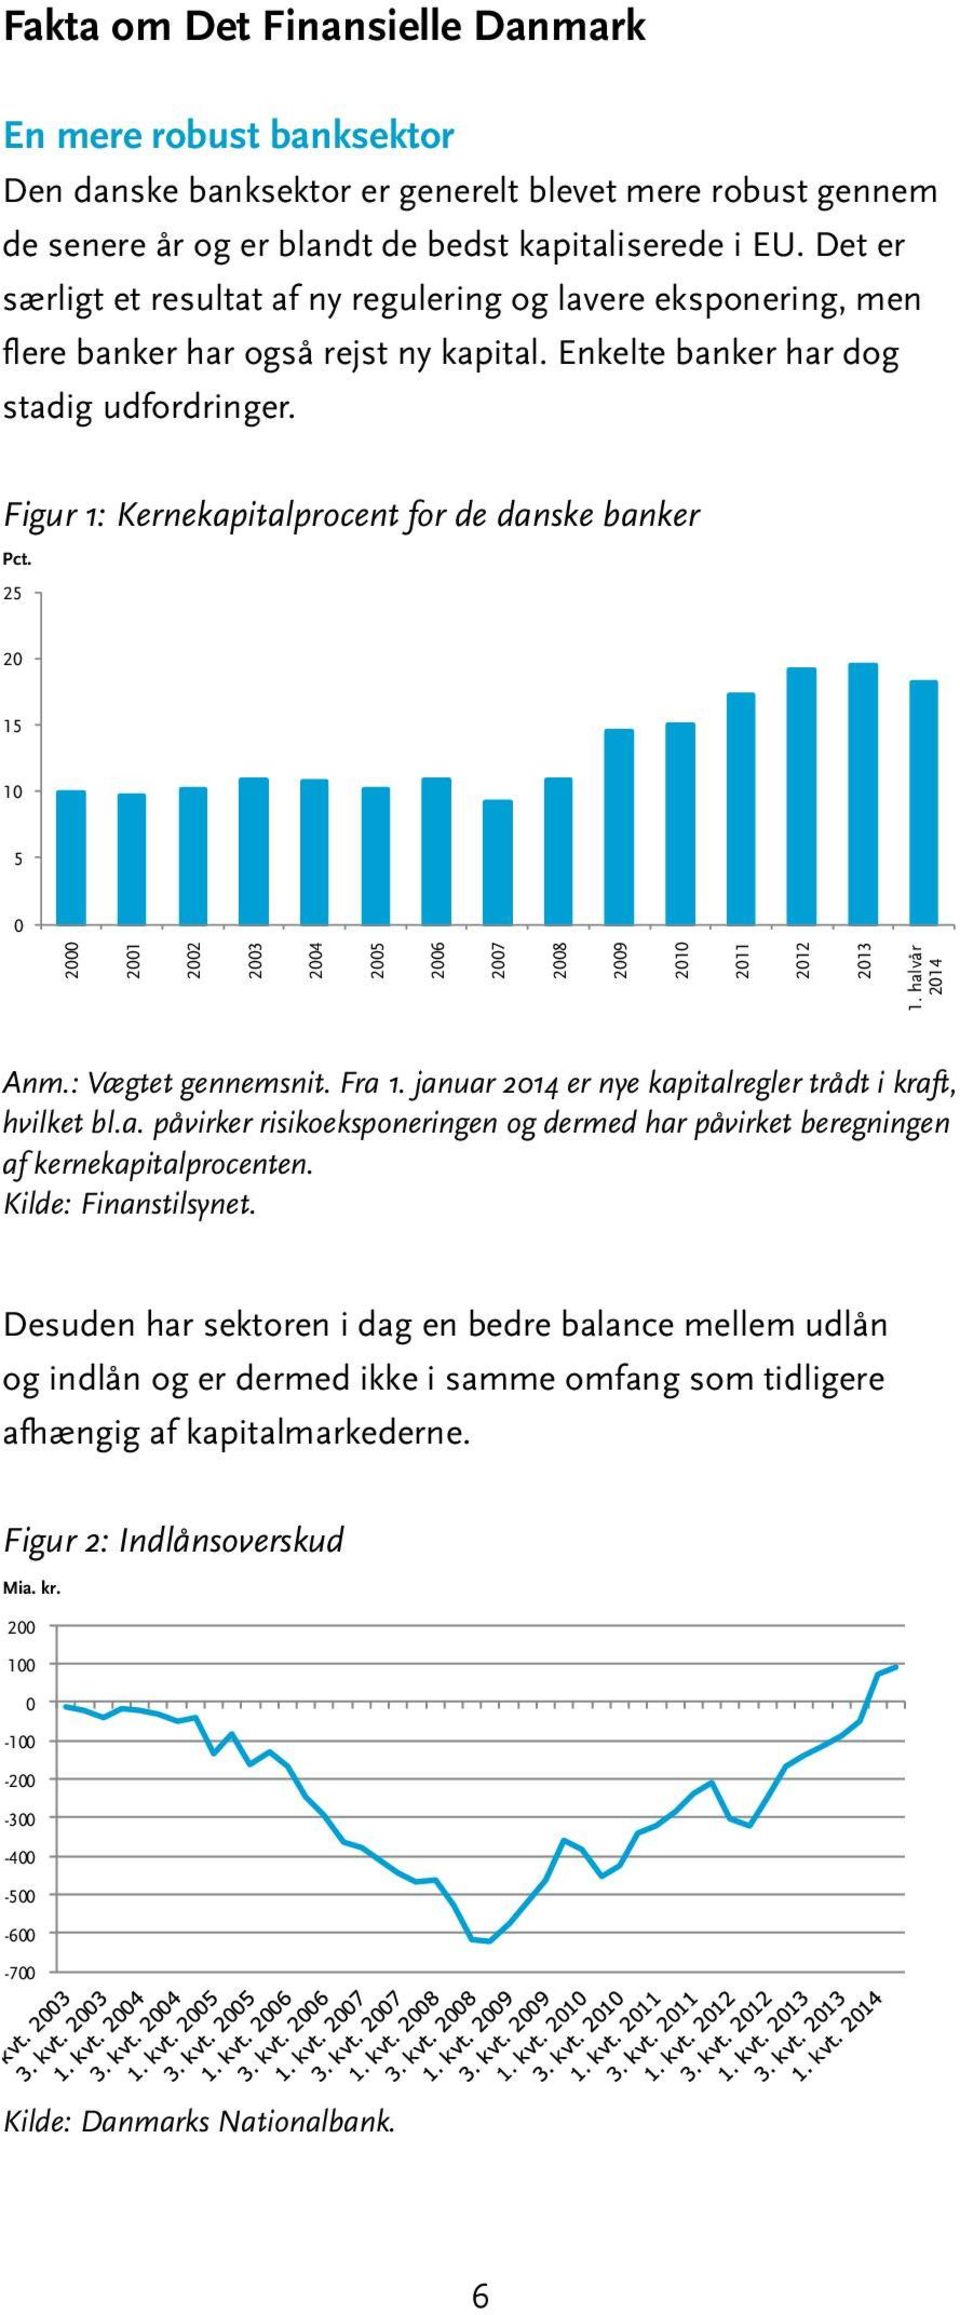 Figur 1: Kernekapitalprocent for de danske banker Pct. 25 2 15 1 5 2 21 22 23 24 25 26 27 28 29 21 211 212 213 1. halvår 214 Anm.: Vægtet gennemsnit. Fra 1.